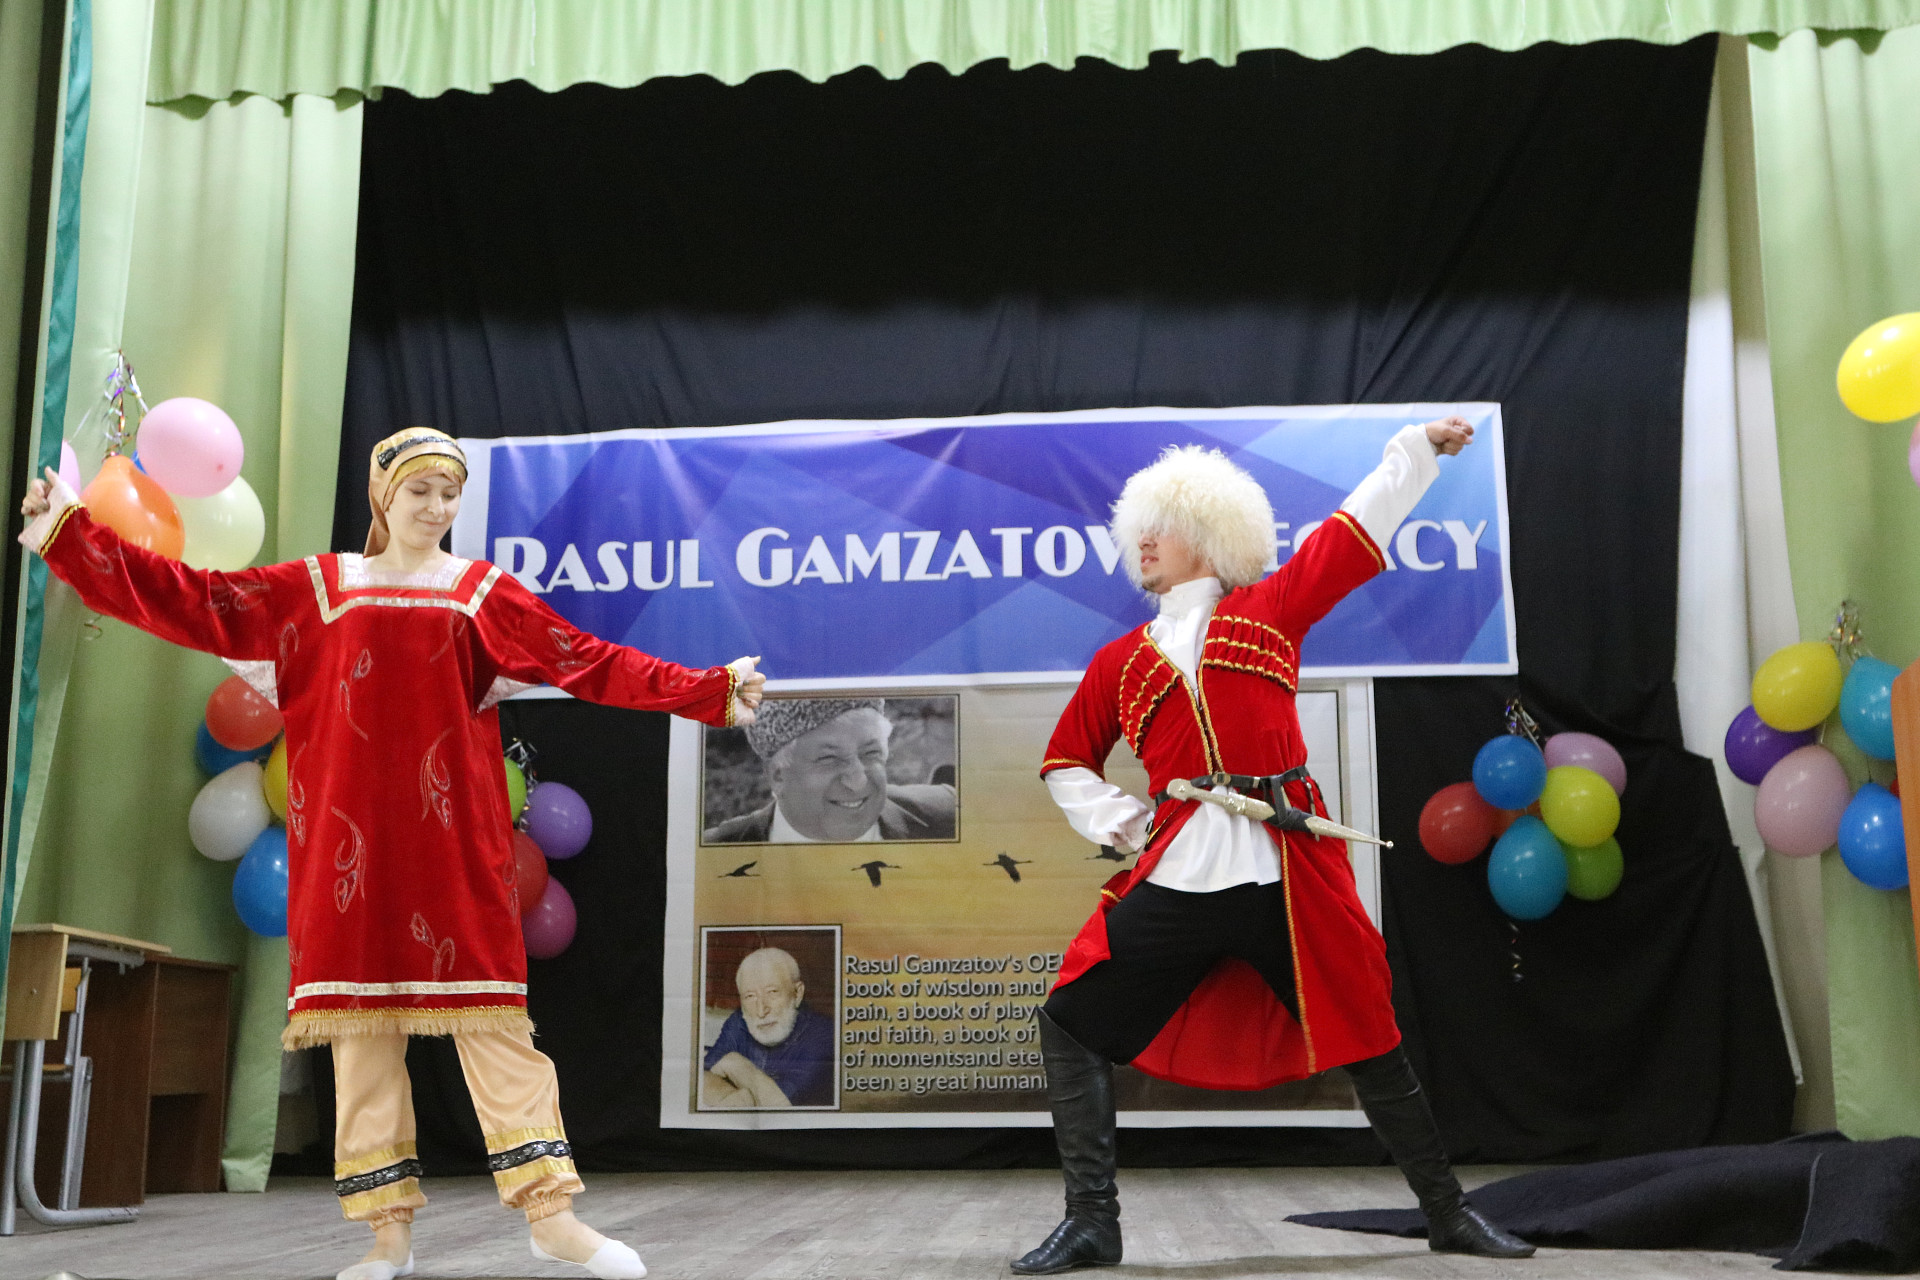 Фестиваль «Rasul Gamsatov’s Legacy/Творческое наследие Расула Гамзатова» прошел в ДГУ 